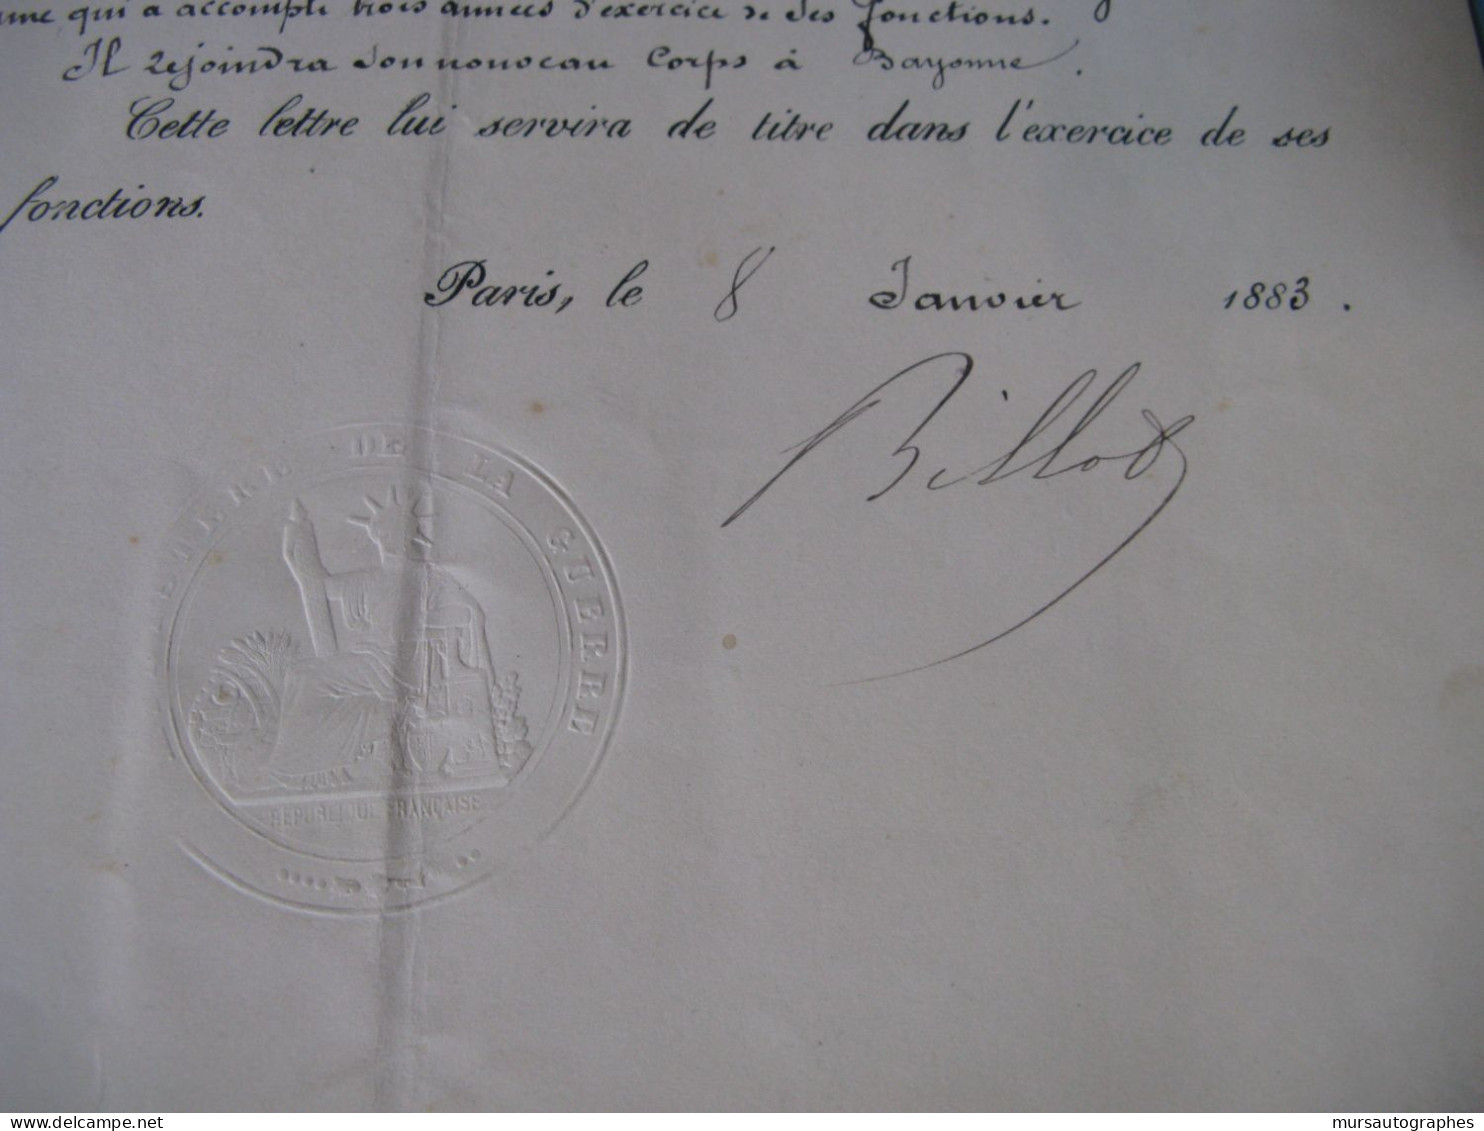 LETTRE SIGNEE DE JEAN-BAPTISTE BILLOT 1883 MILITAIRE MINISTRE GUERRE DREYFUS DEPUTE CORREZE - Historische Personen